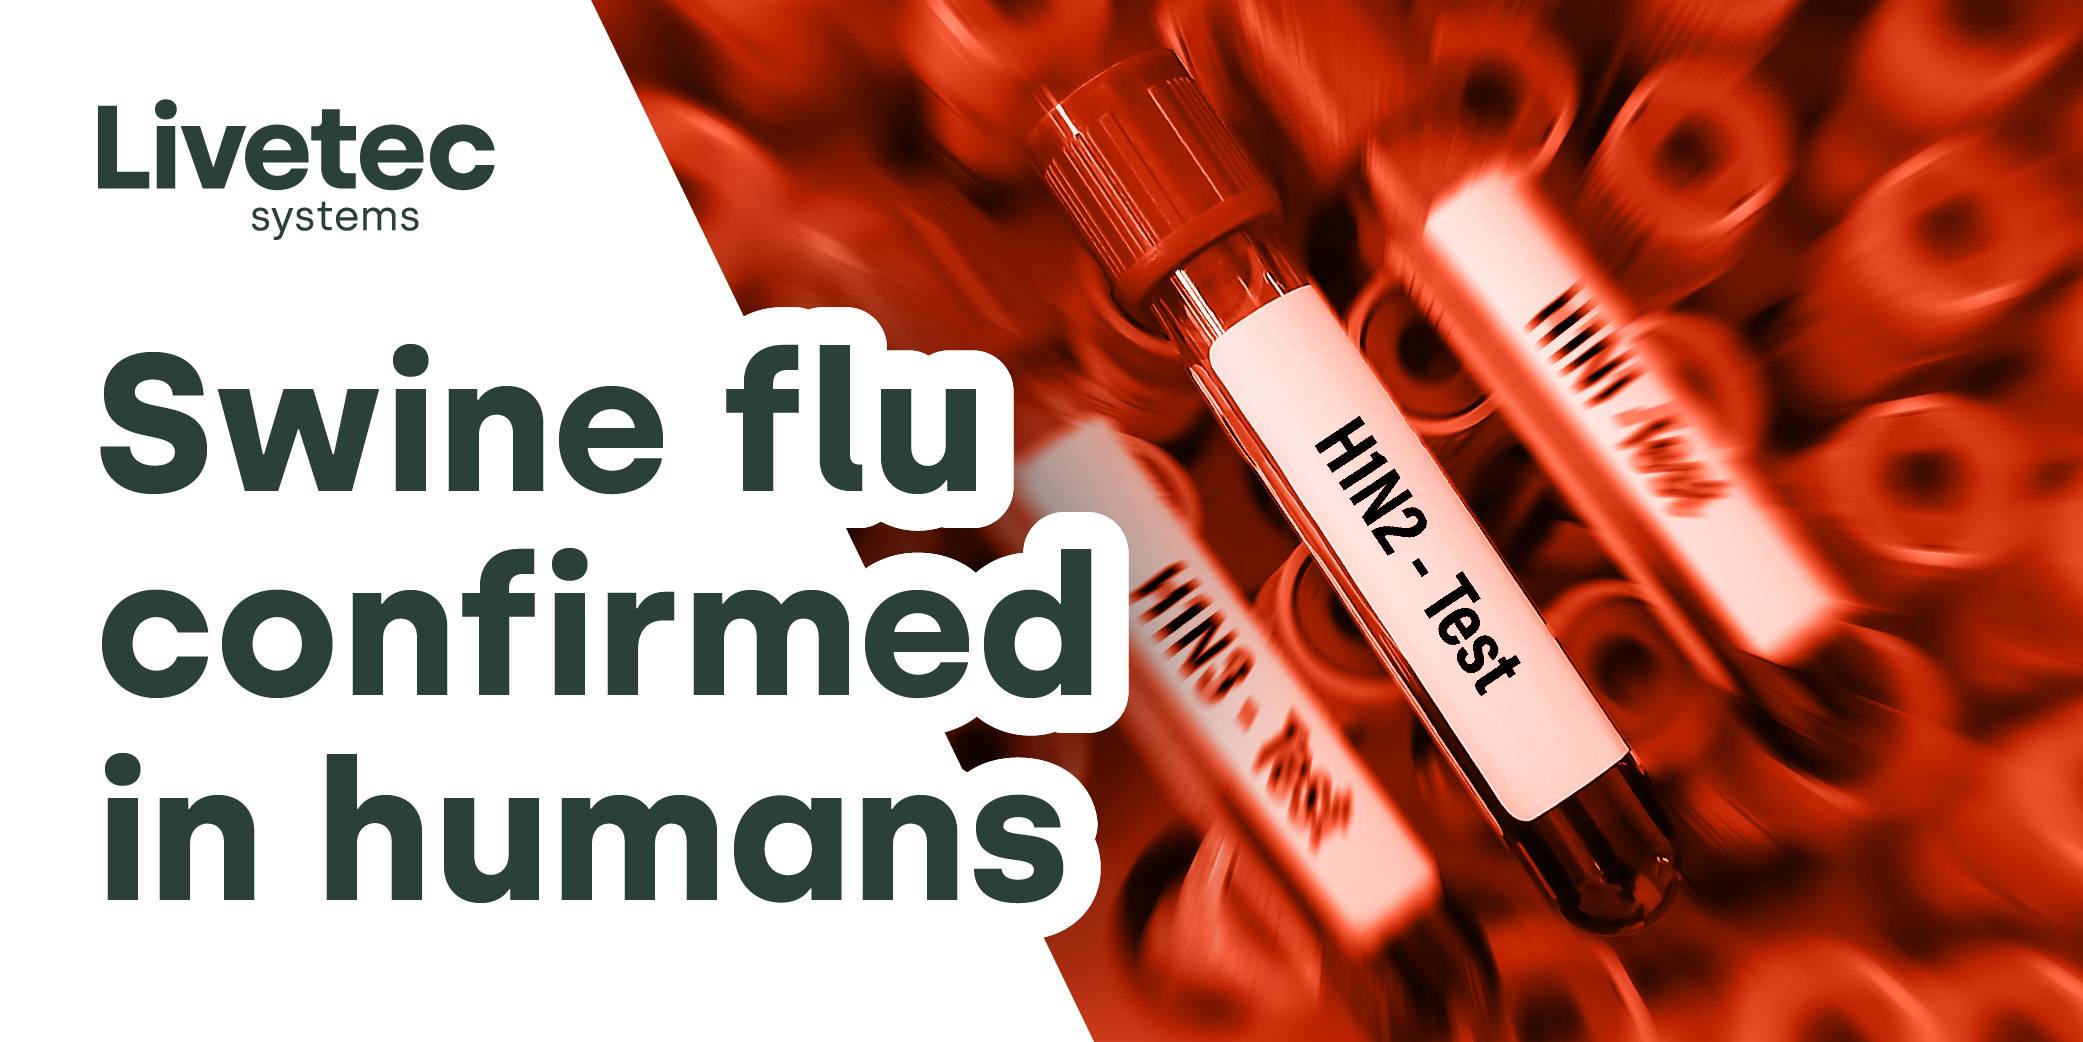 Swine flu confirmed in humans blog graphic